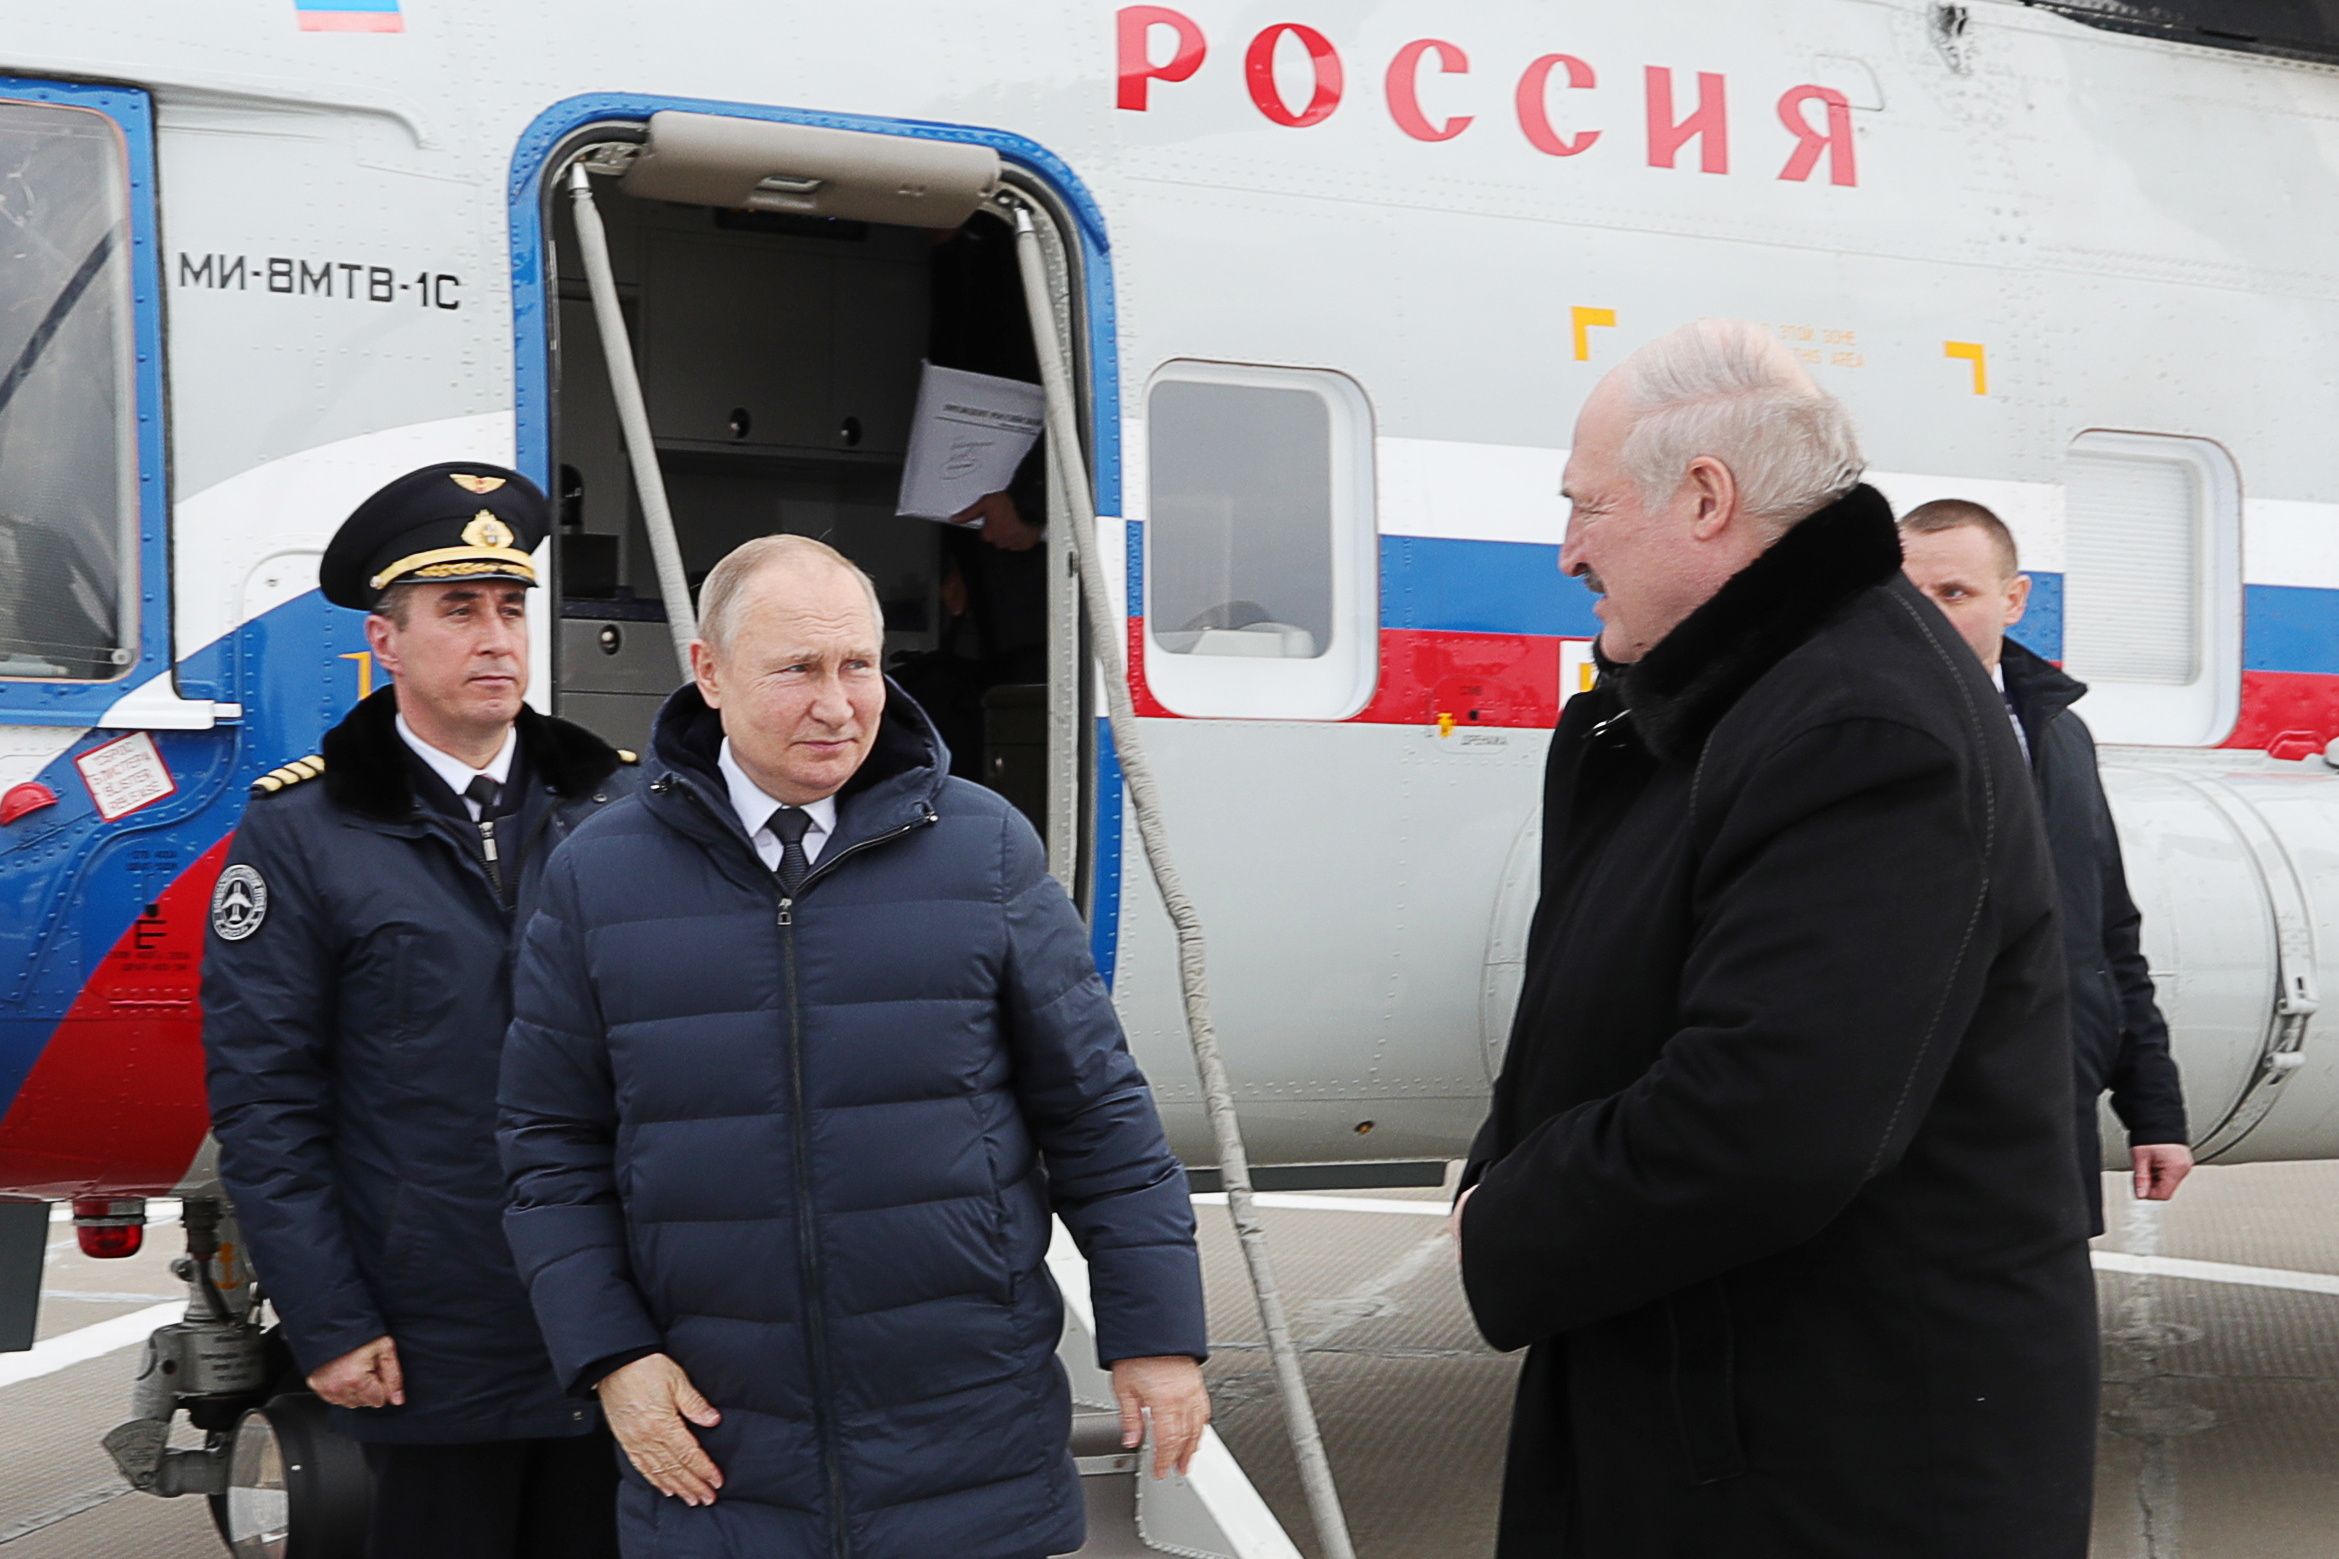 Putin steht vor einem Flugzeug des russischen Militärs, neben ihm Lukaschenko